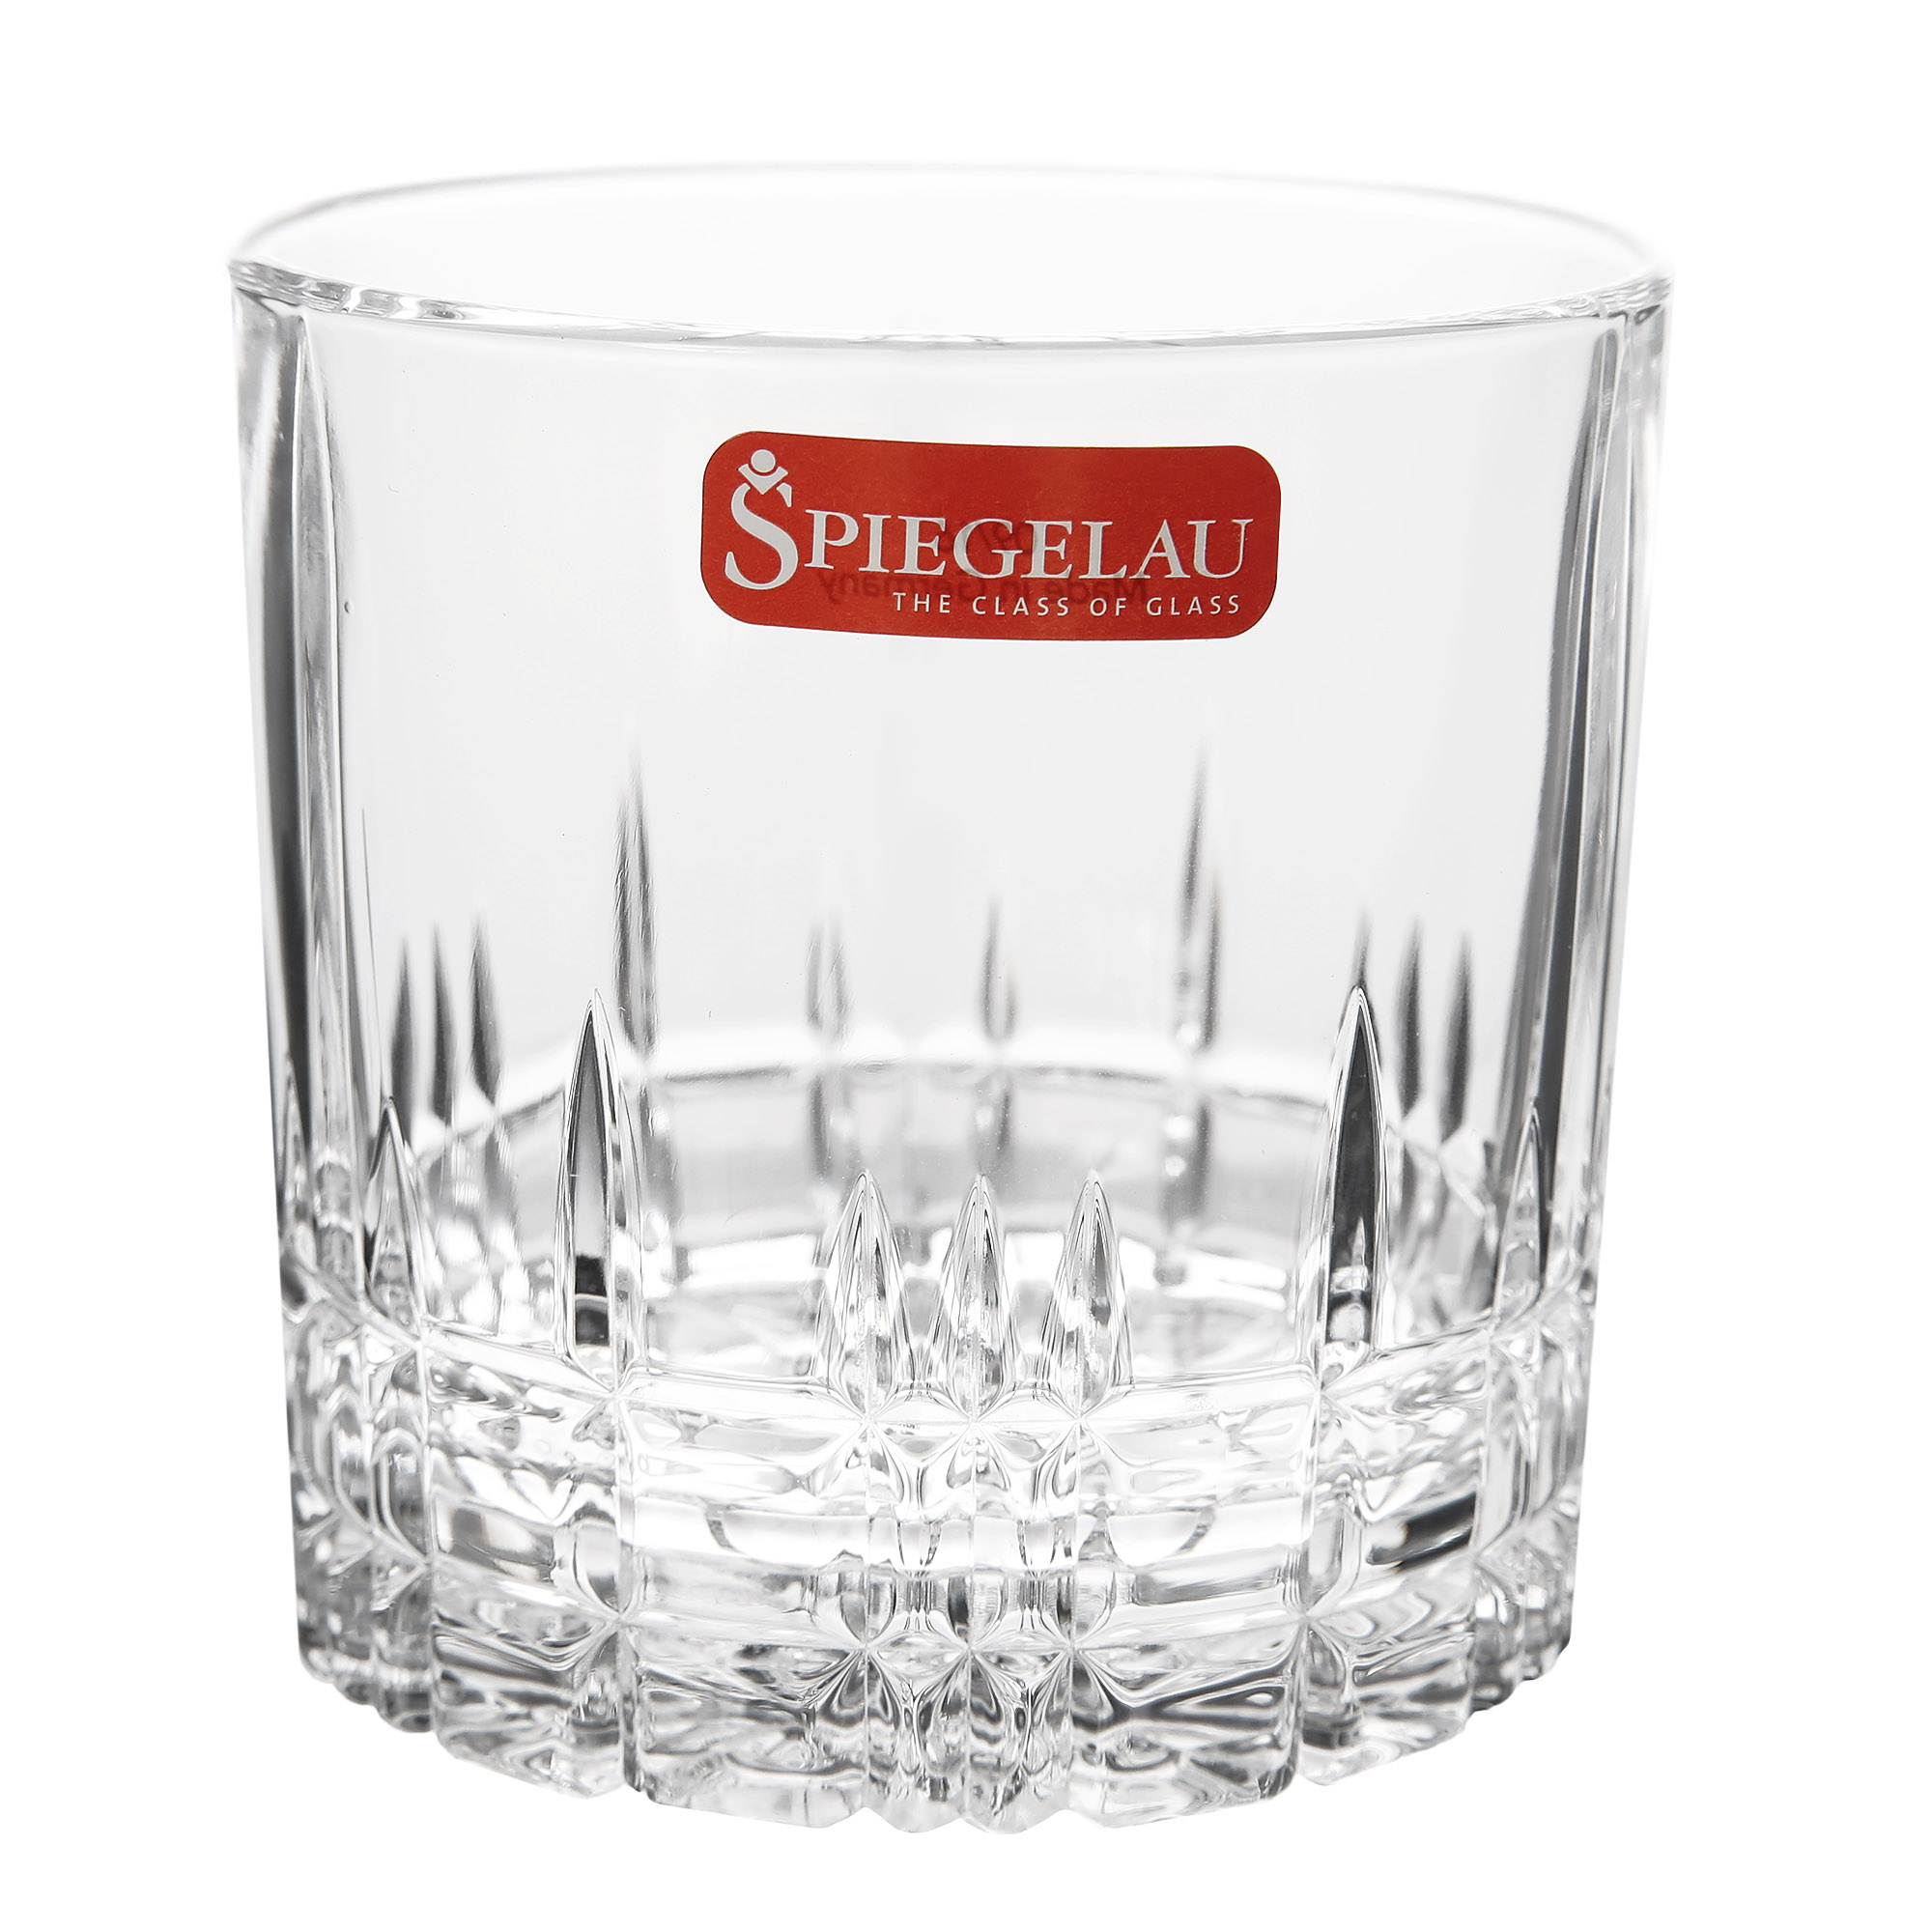 набор бокалов для виски идеальный бар 4х270 spiegelau Набор бокалов для виски идеальный бар 4х270 Spiegelau